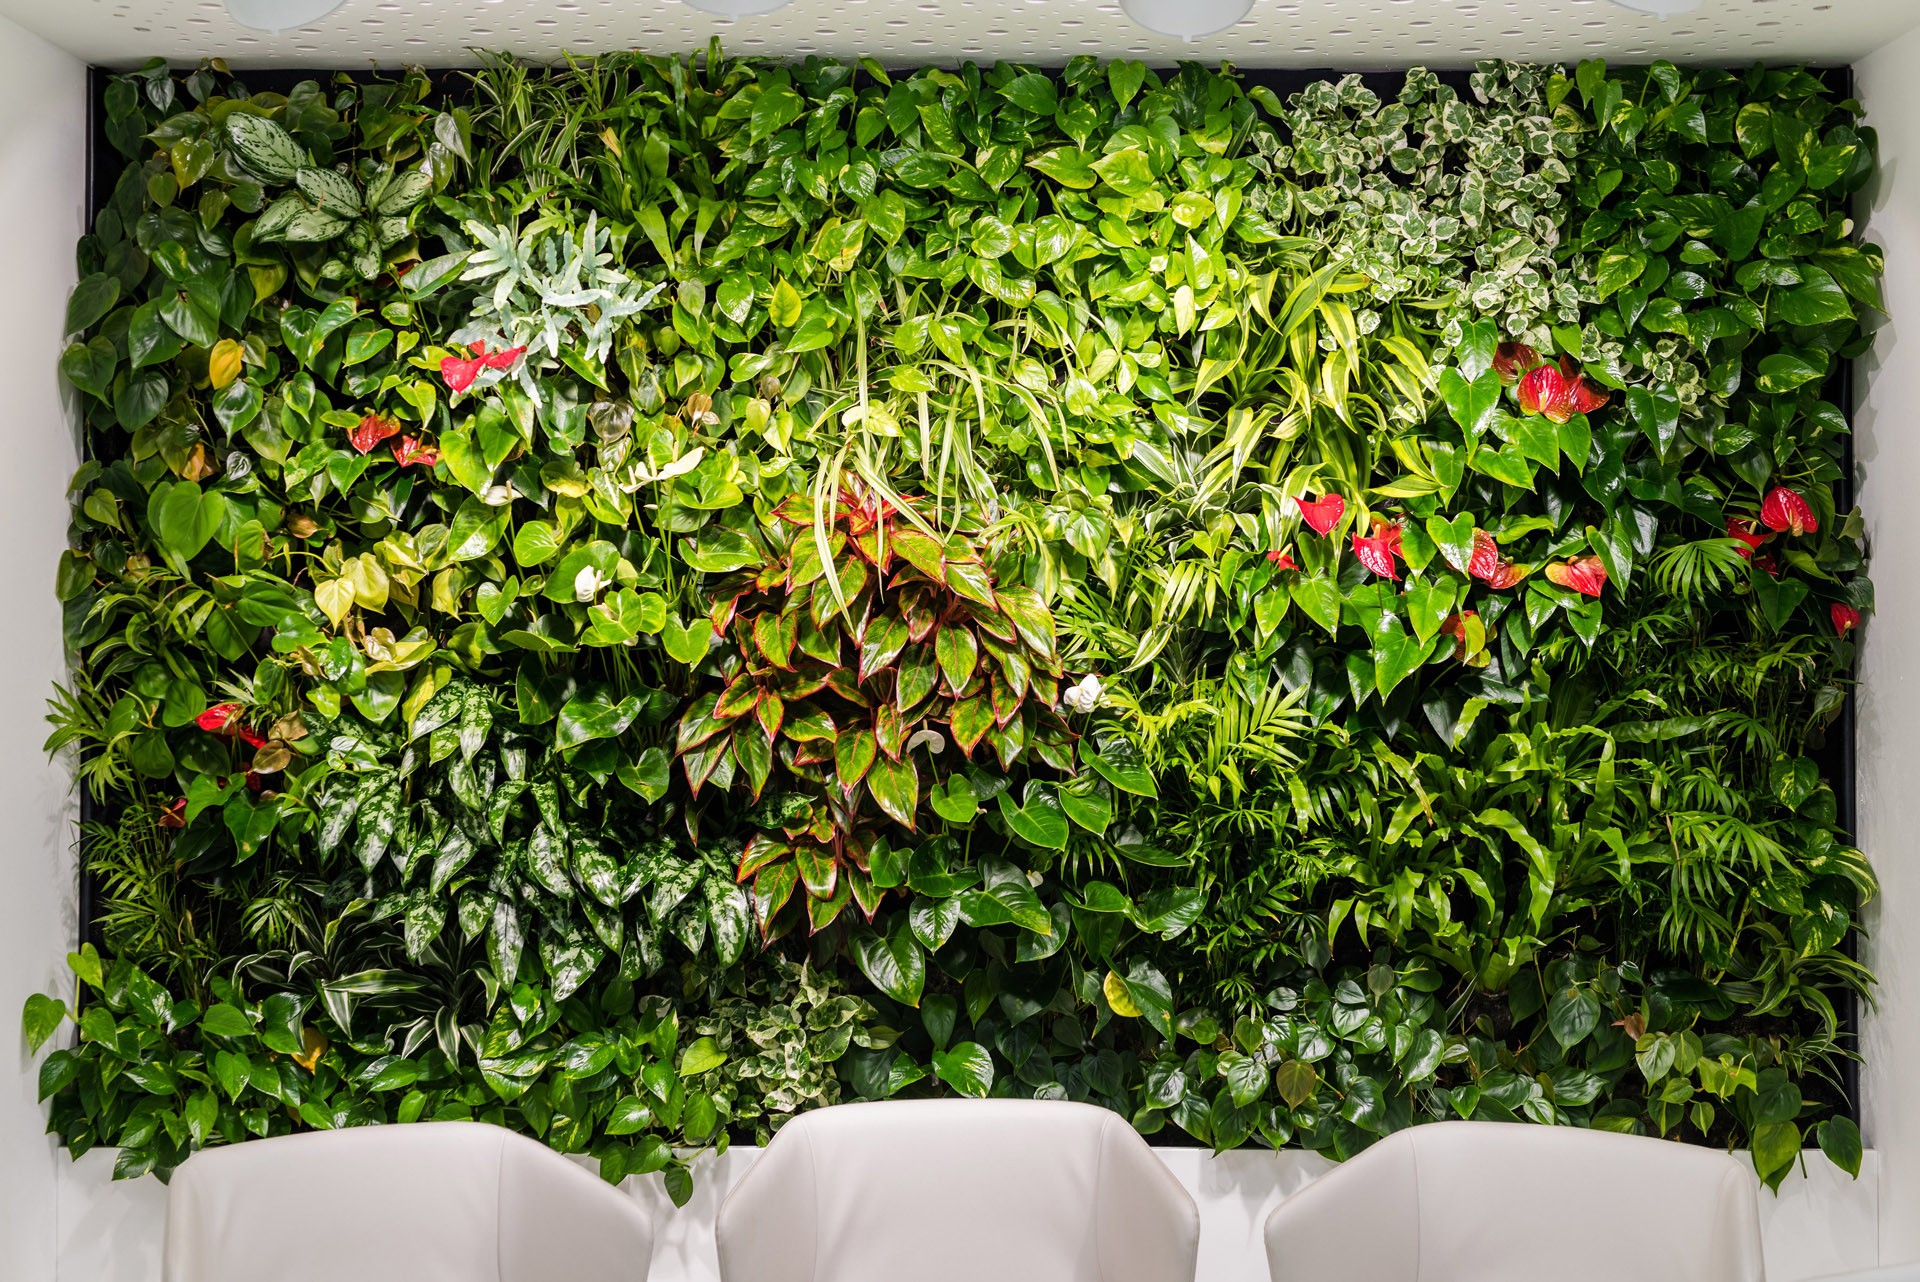 Živá stěna s rostlinami v interiéru.